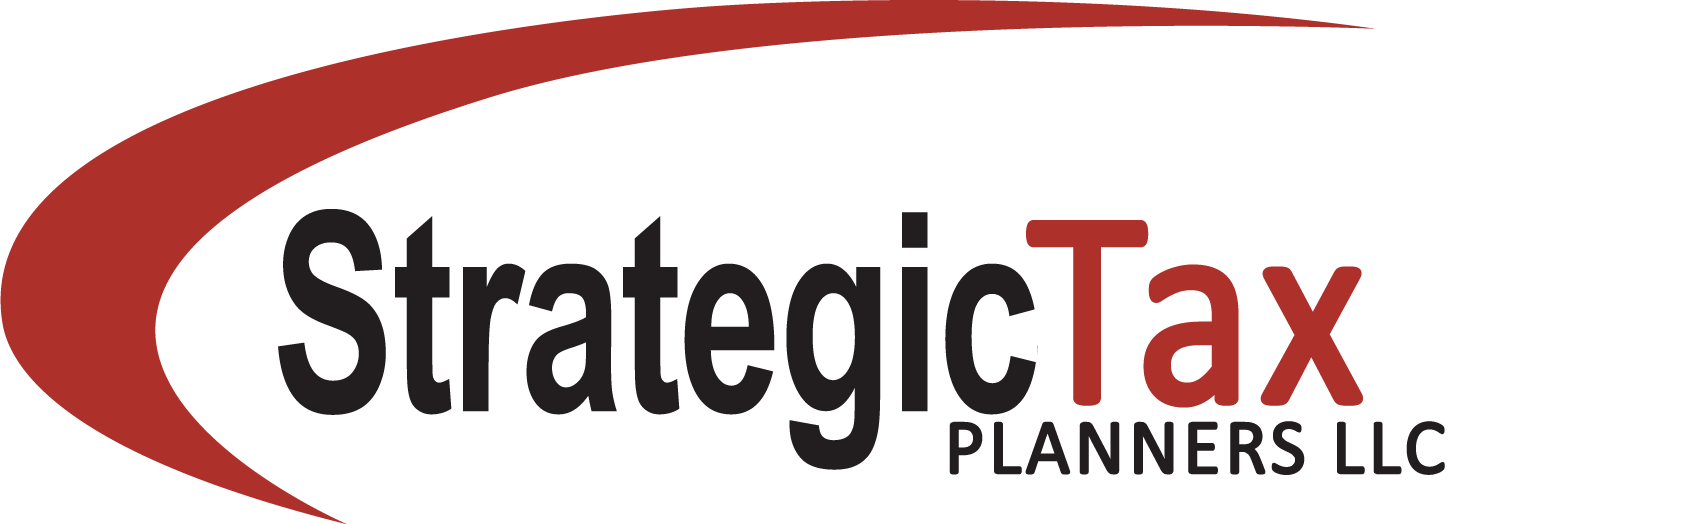 Strategic Tax Planners LLC